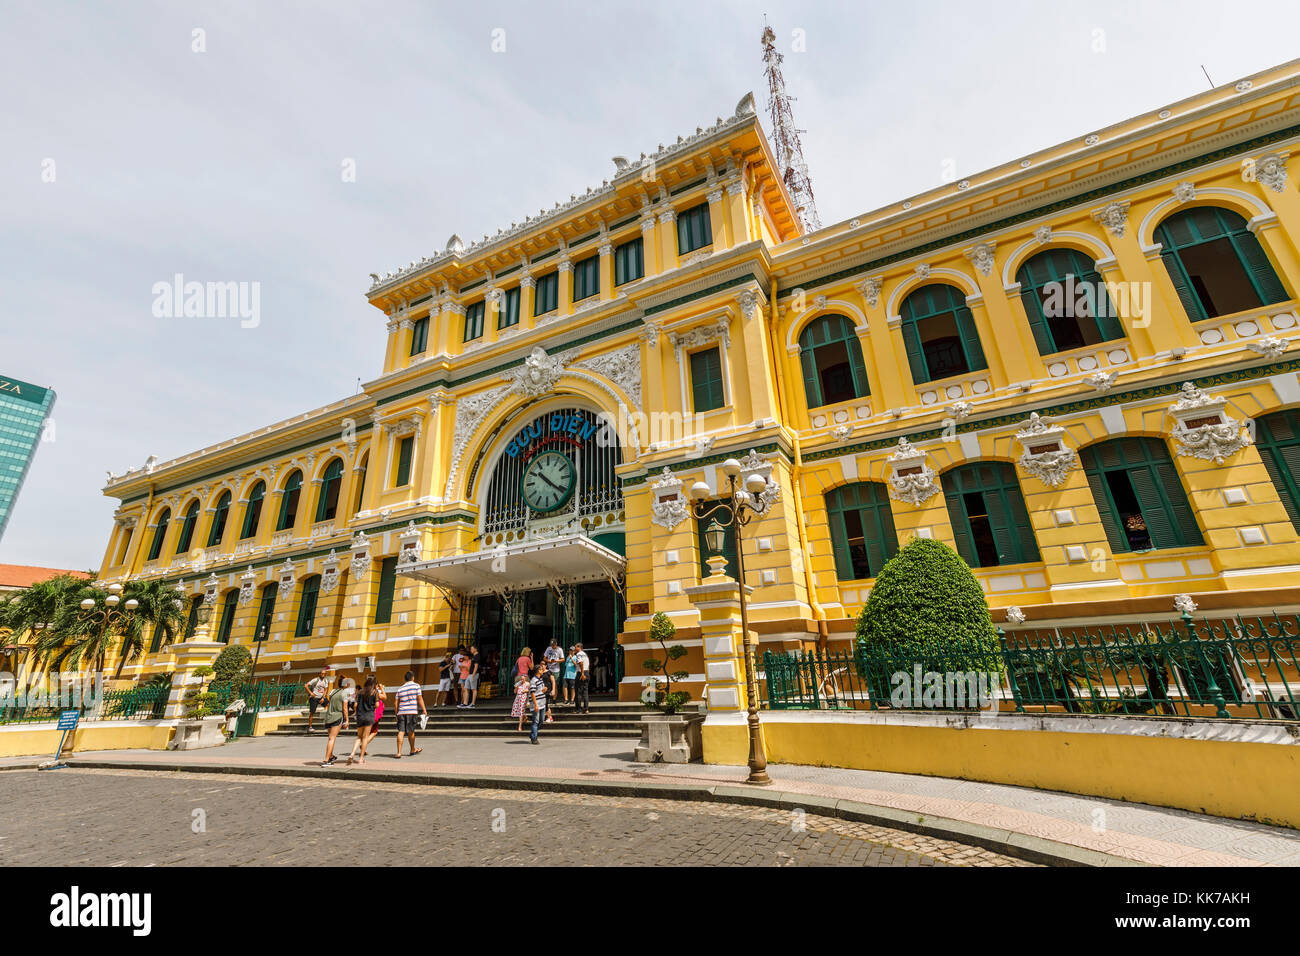 Central Post Office progettata da Gustave Eiffel, District 1 Dong Khoi Area, centro di Saigon (Ho Chi Minh City), Vietnam del sud, sud-est asiatico Foto Stock